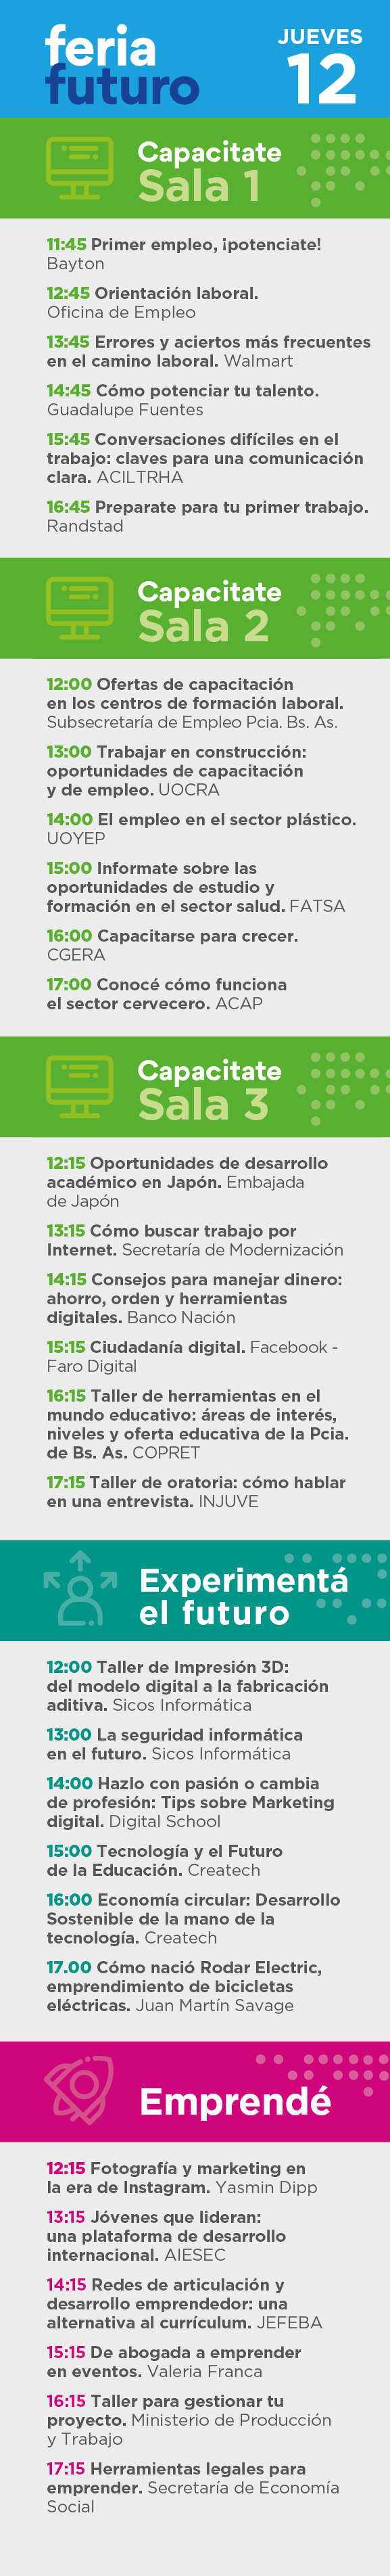 feria futuro, La Plata - Agenda Jueves 12